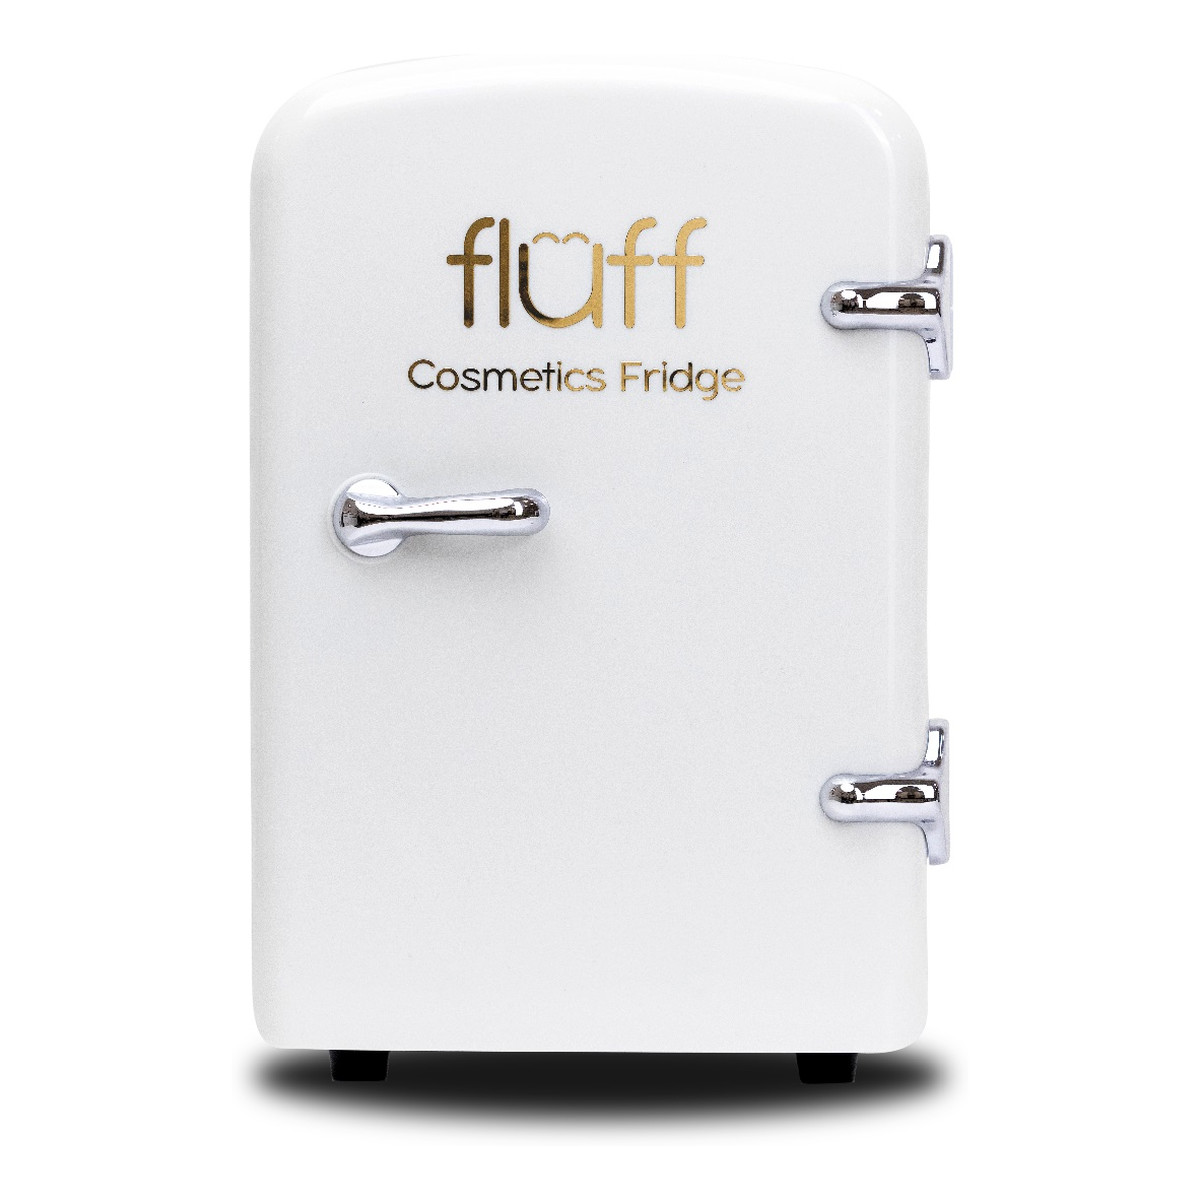 Fluff Cosmetics Fridge Lodówka kosmetyczna ze złotym logo Biała